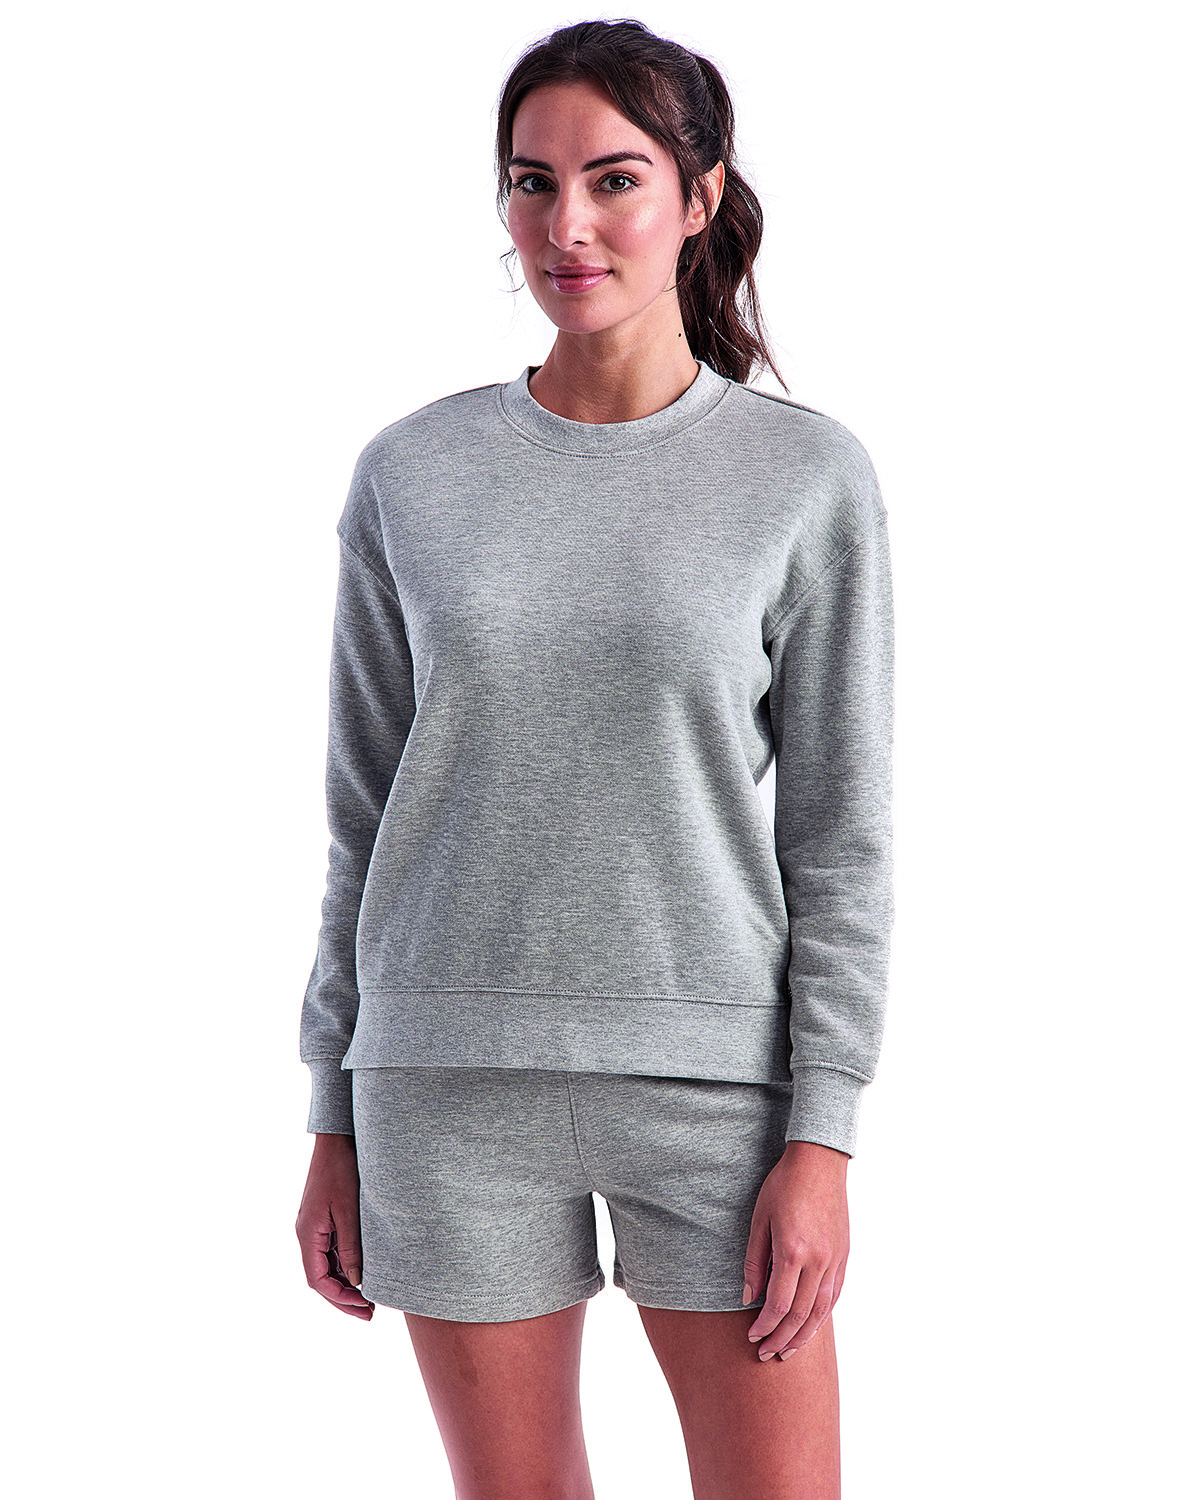 TriDri Ladies' Billie Side-Zip Sweatshirt heather grey 